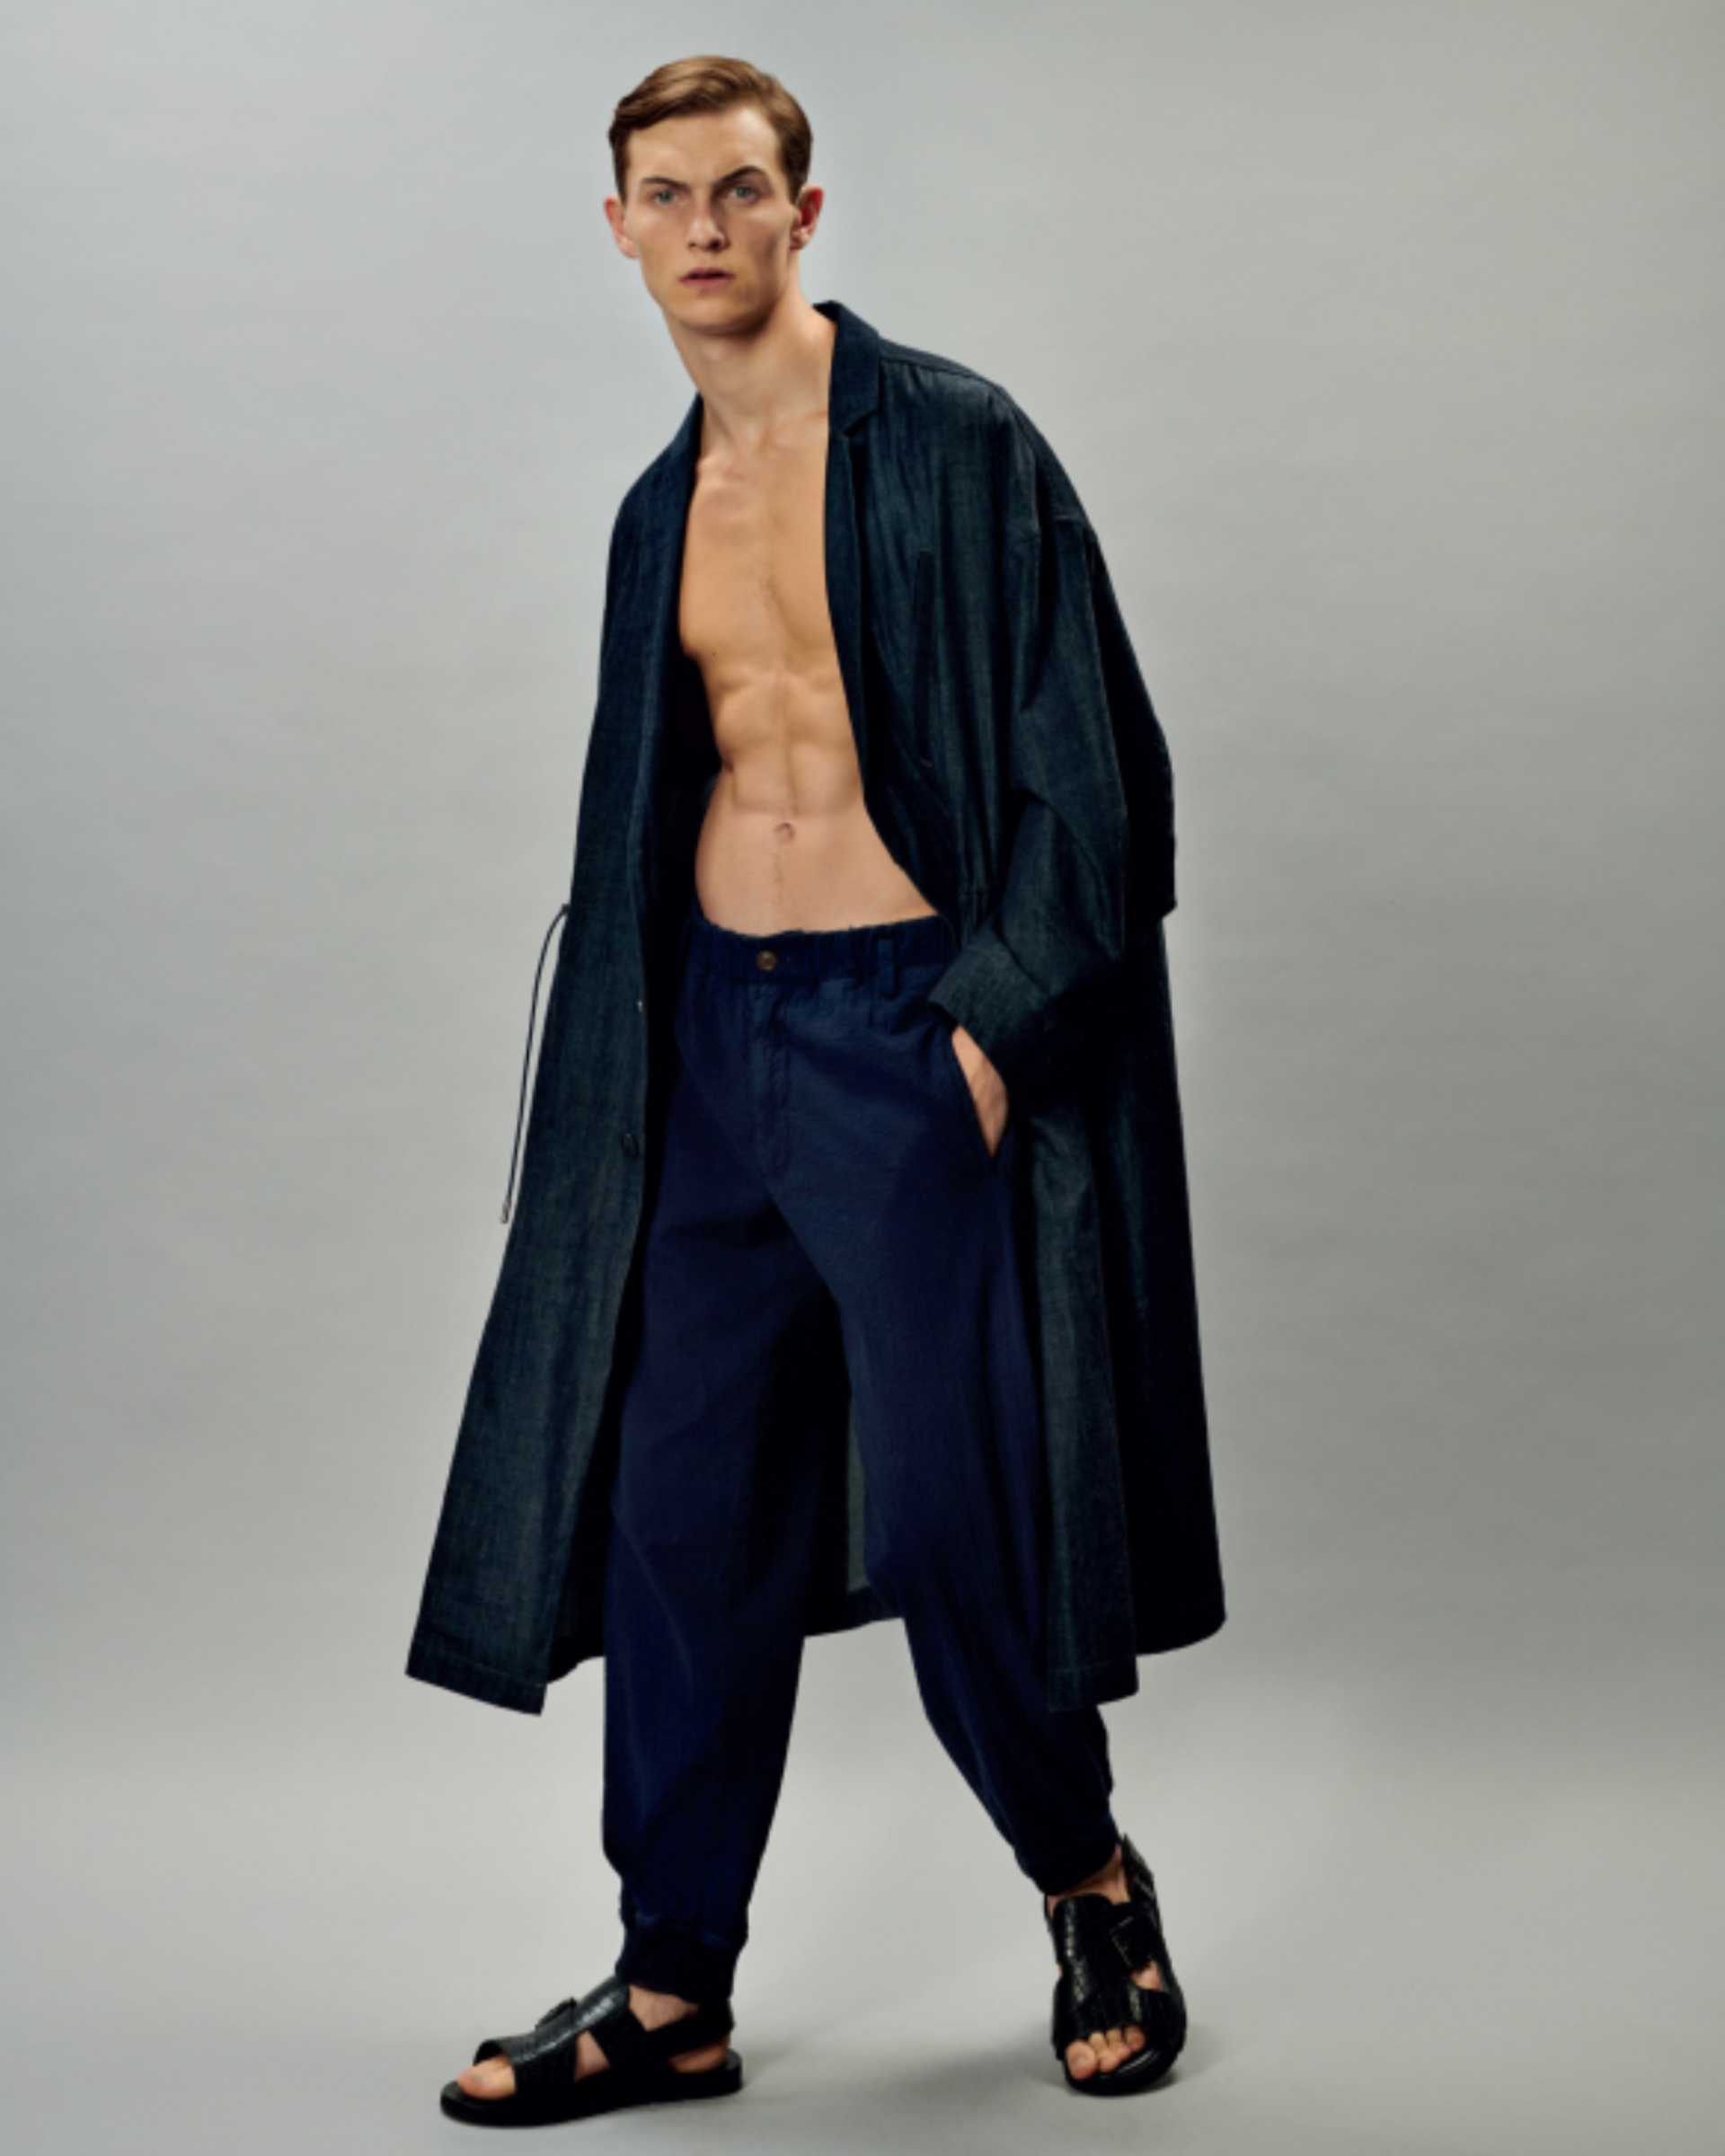 Luc Defont, el modelo francés del momento